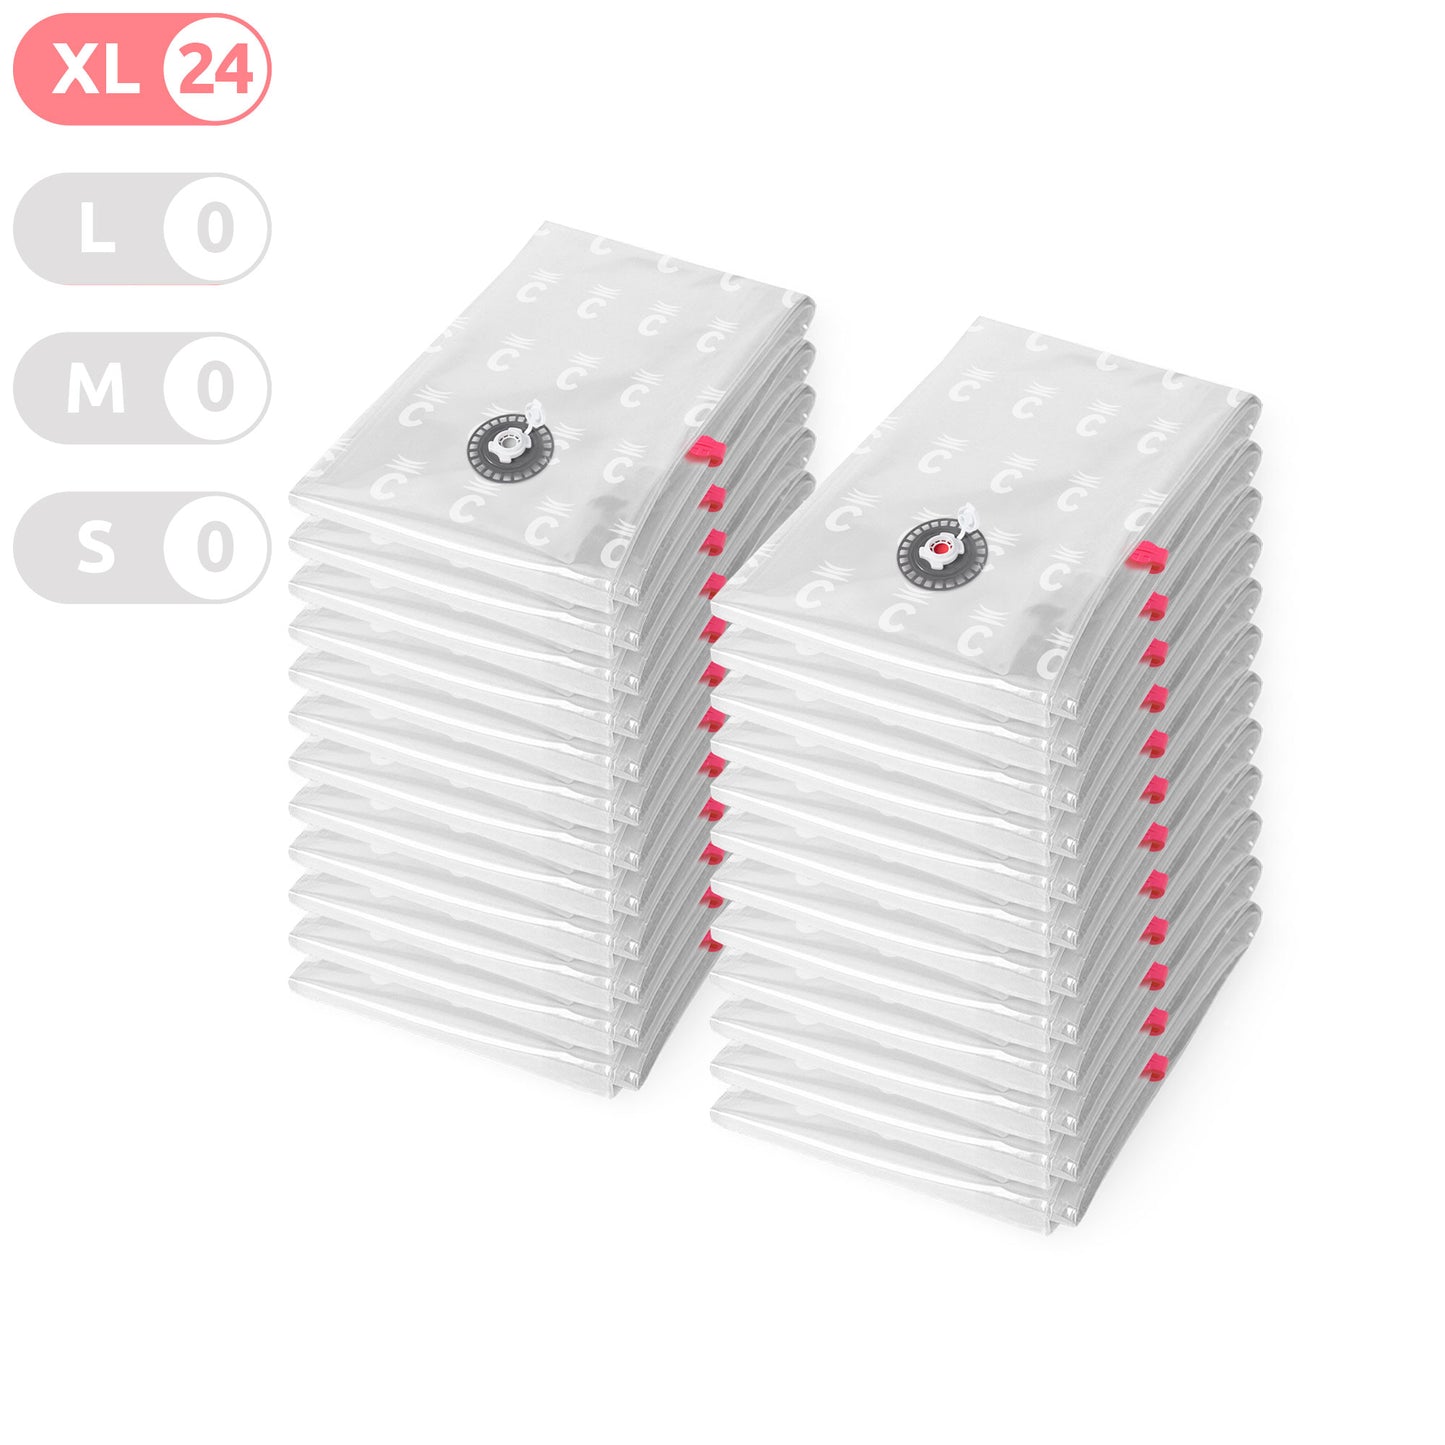 Compactor pack de 24 bolsas de almacenamiento al vacío Aspispace XL transparentes